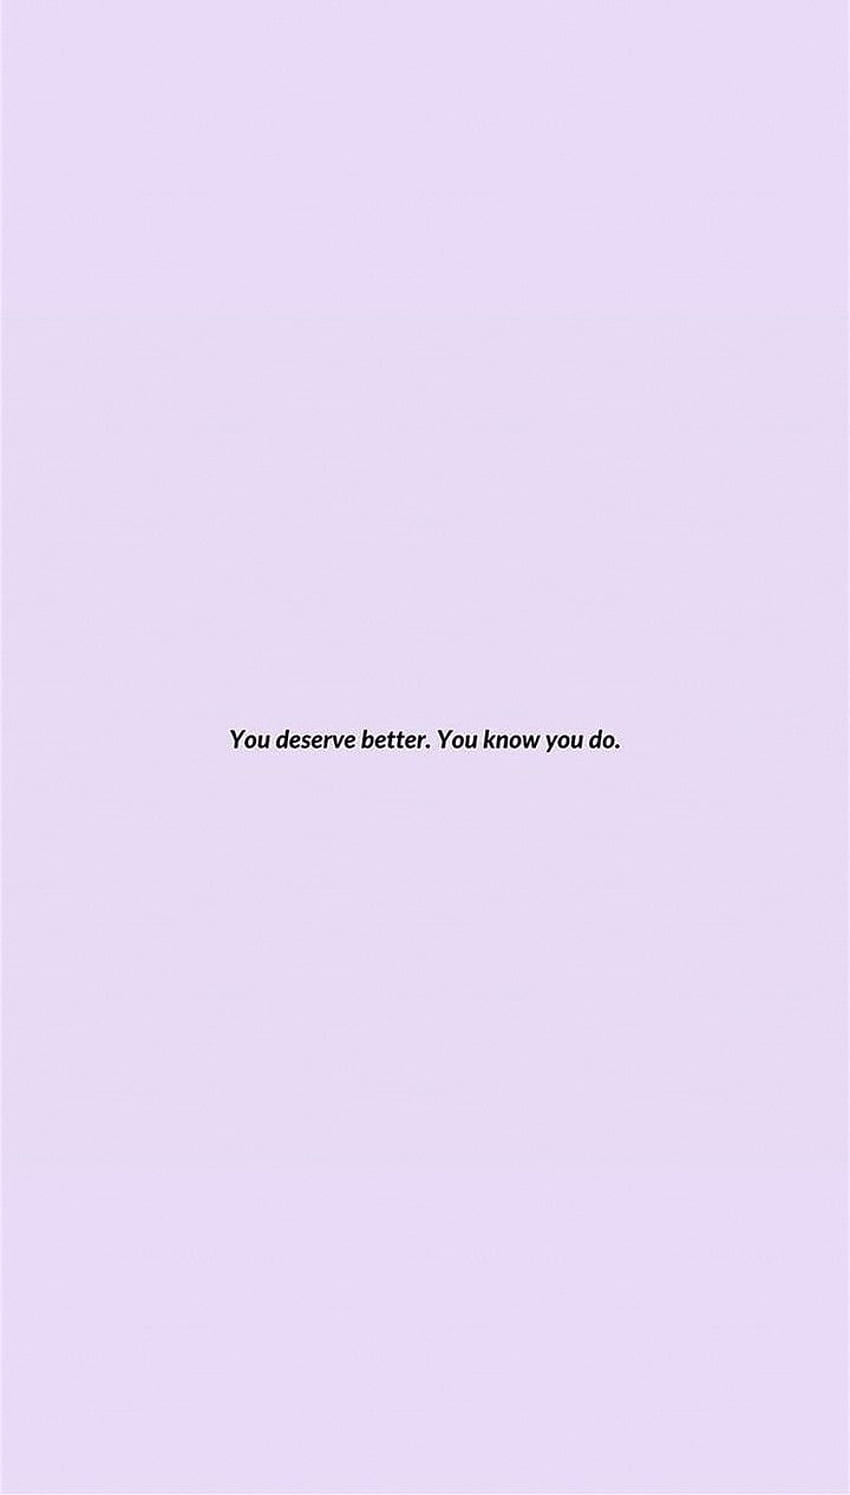 You deserve better. You know you do. - Depressing